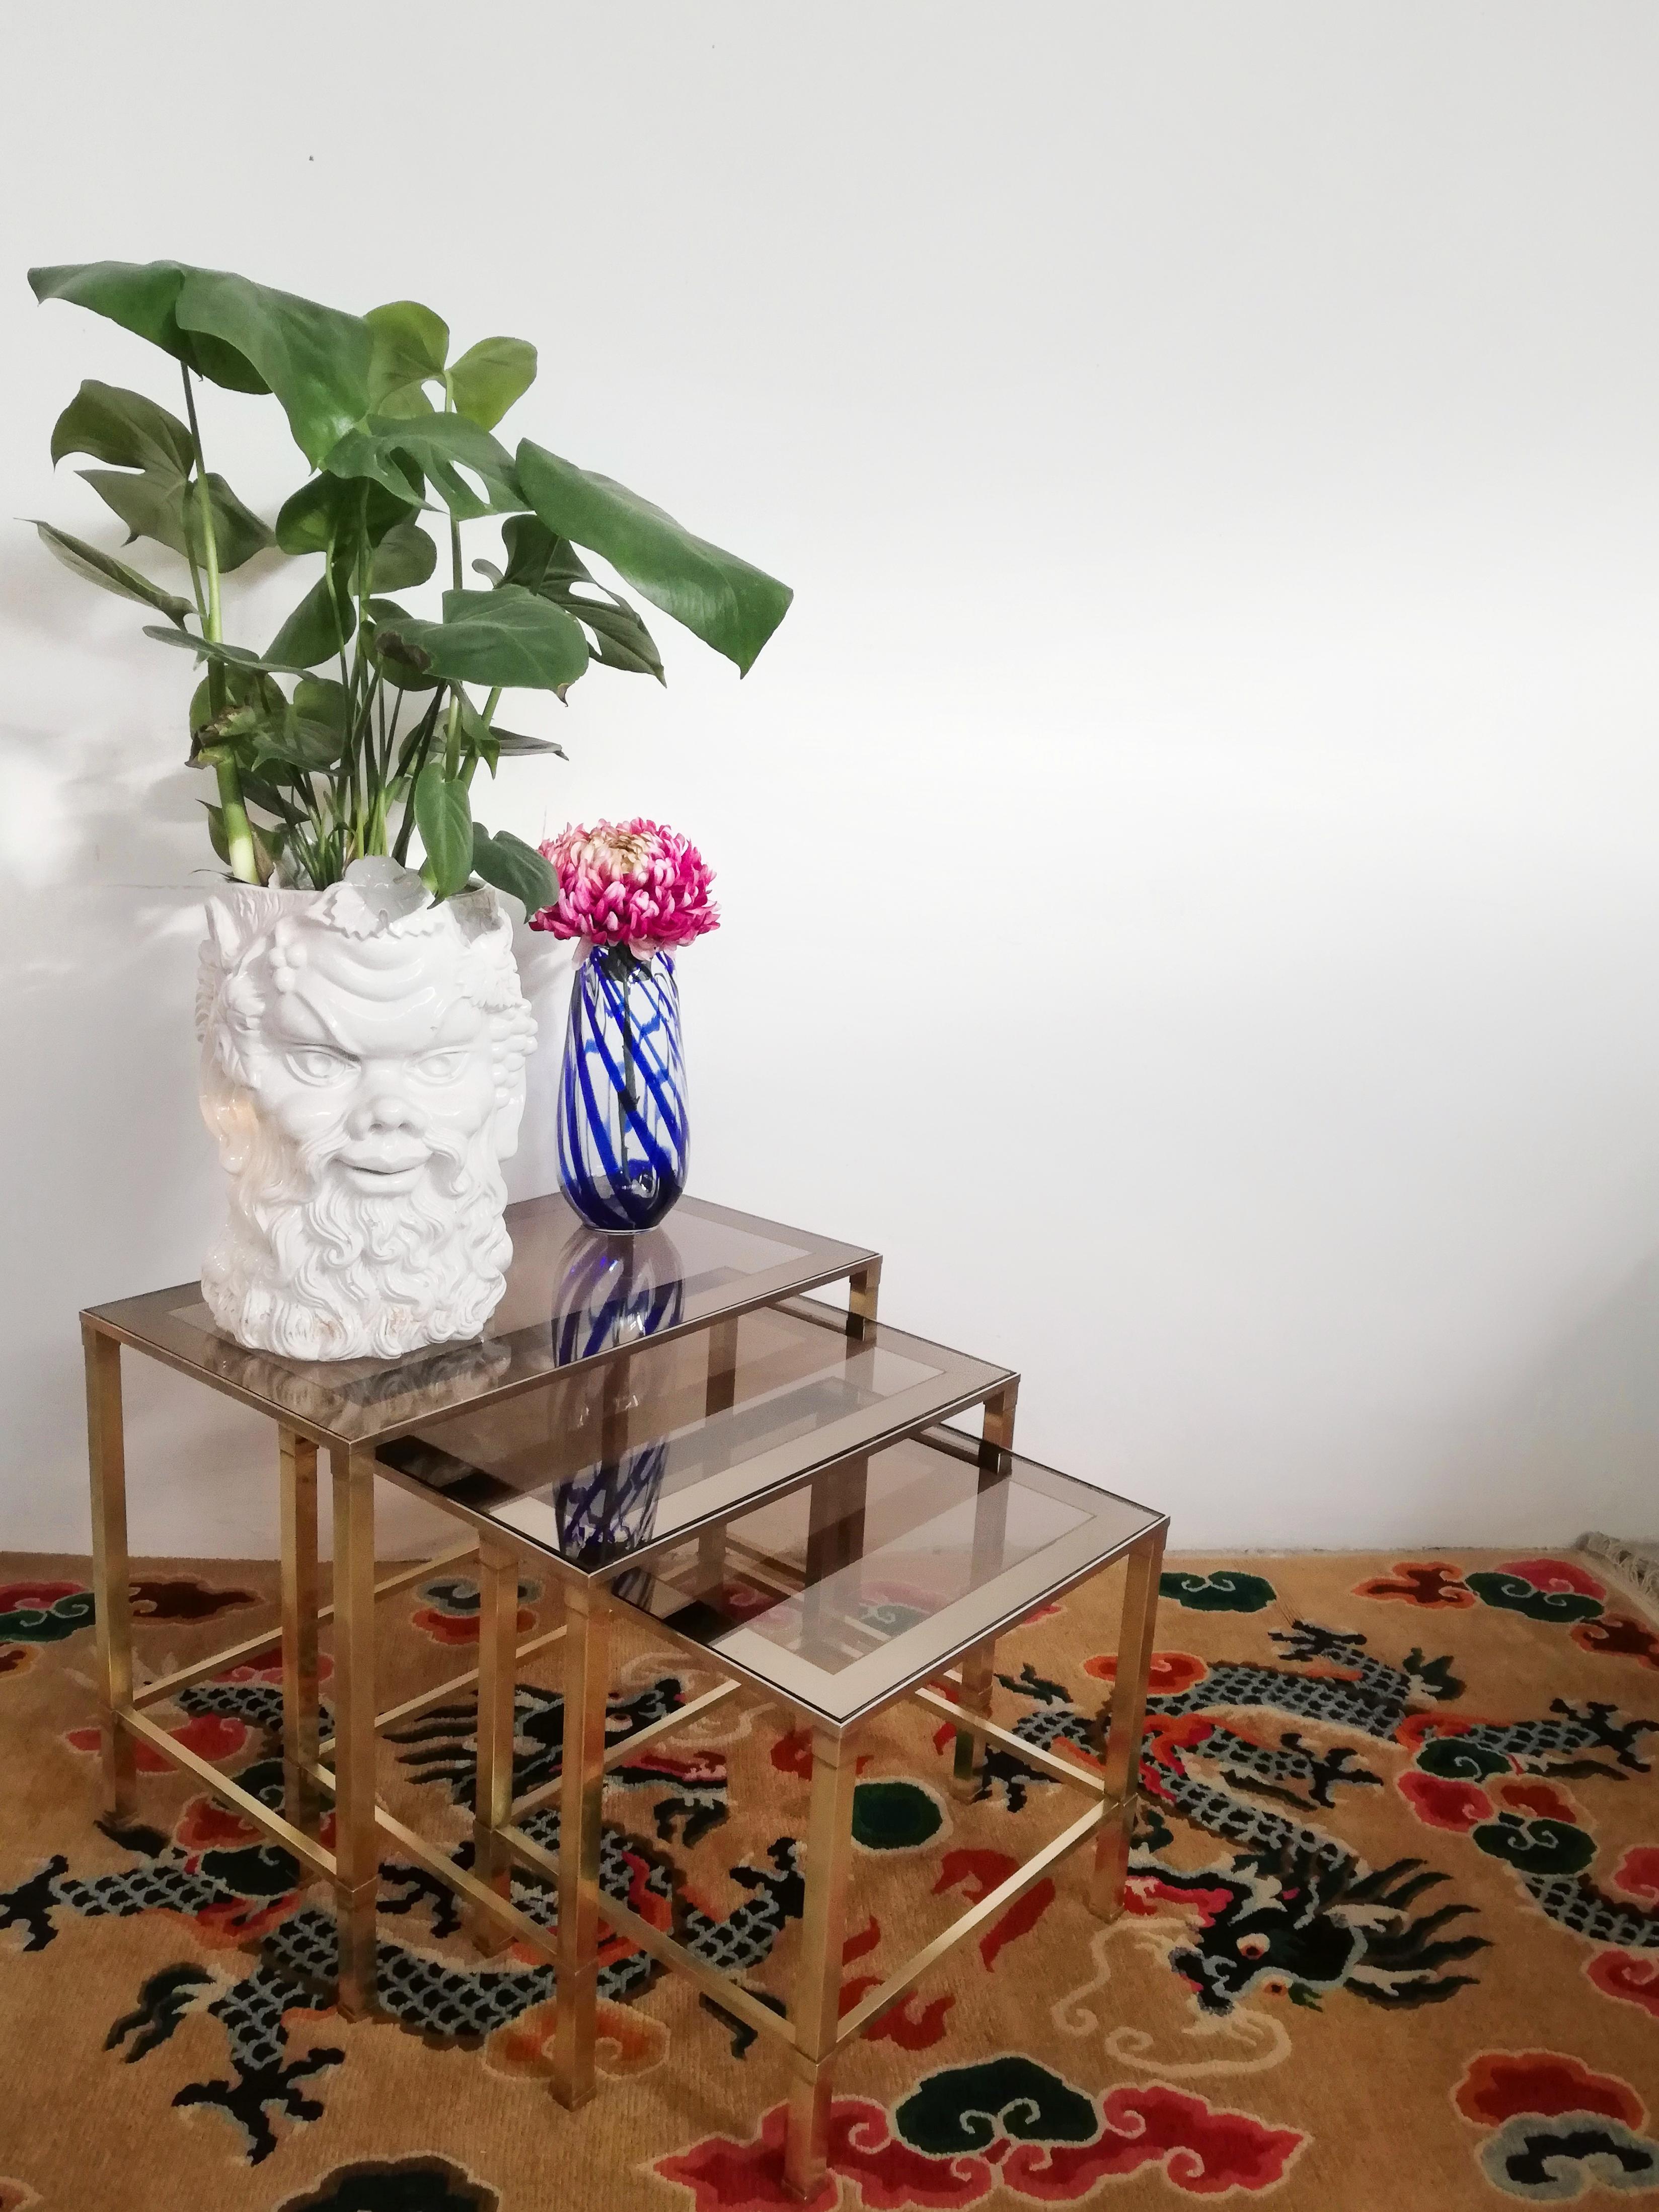 Ein glamouröses Set von Nesting Tables, hergestellt in Italien in den 1970er Jahren, bestehend aus 3 Tischen in drei verschiedenen Größen.
die Abmessungen des größten sind:  
Höhe 46,5 cm  Breite 60,5 cm  Tiefe 35,5 cm
des Mediums:
Höhe 41,5 cm 